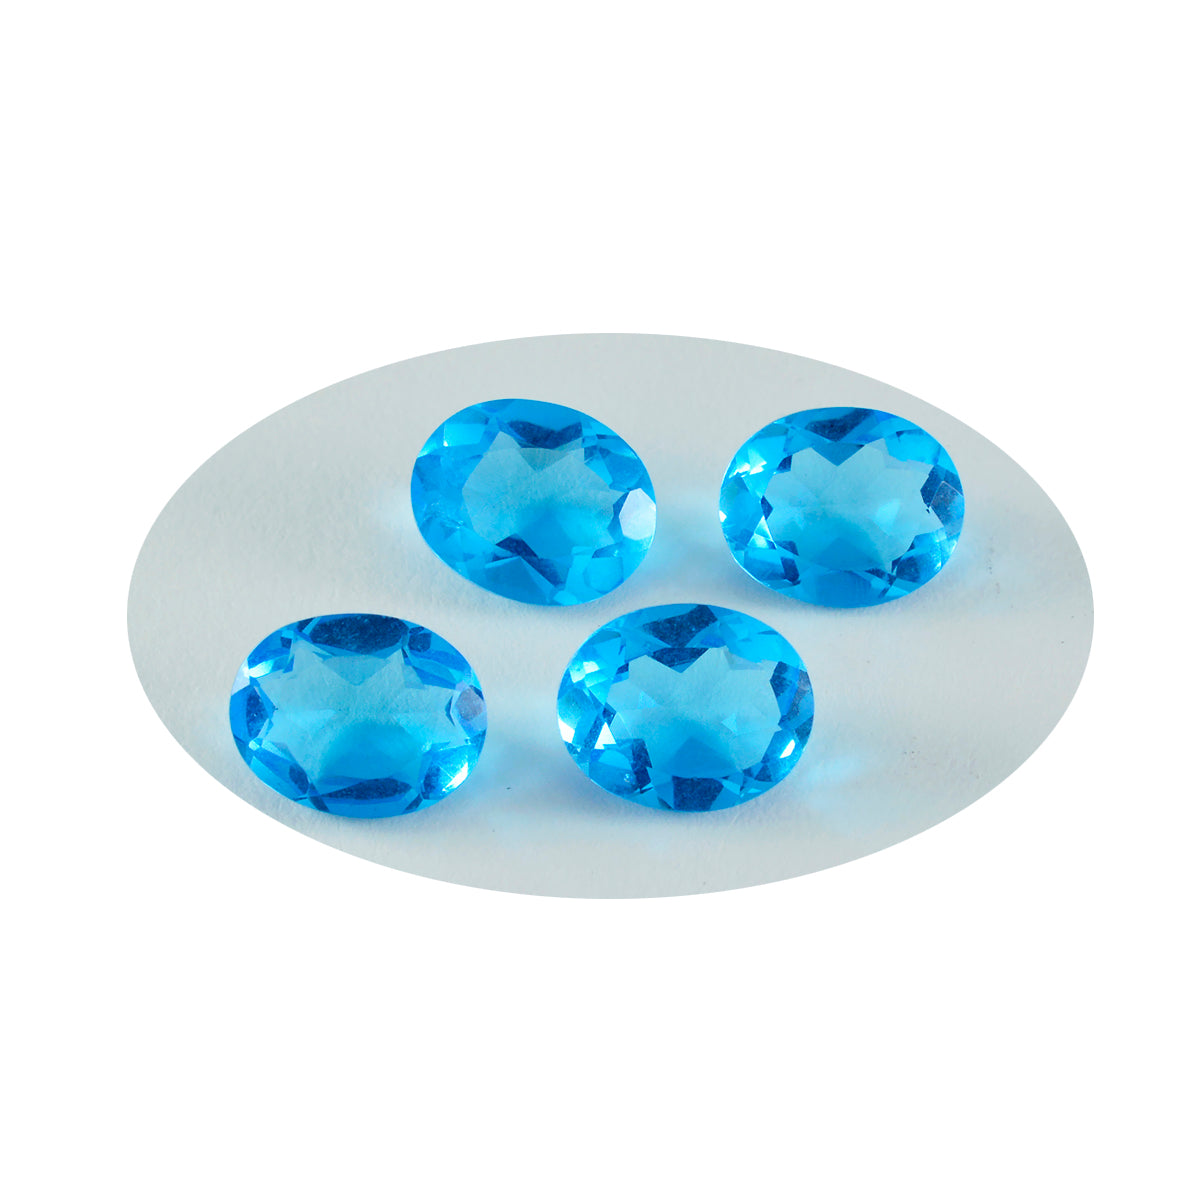 riyogems 1шт голубой топаз cz ограненный 12x16 мм овальной формы красивый качественный камень